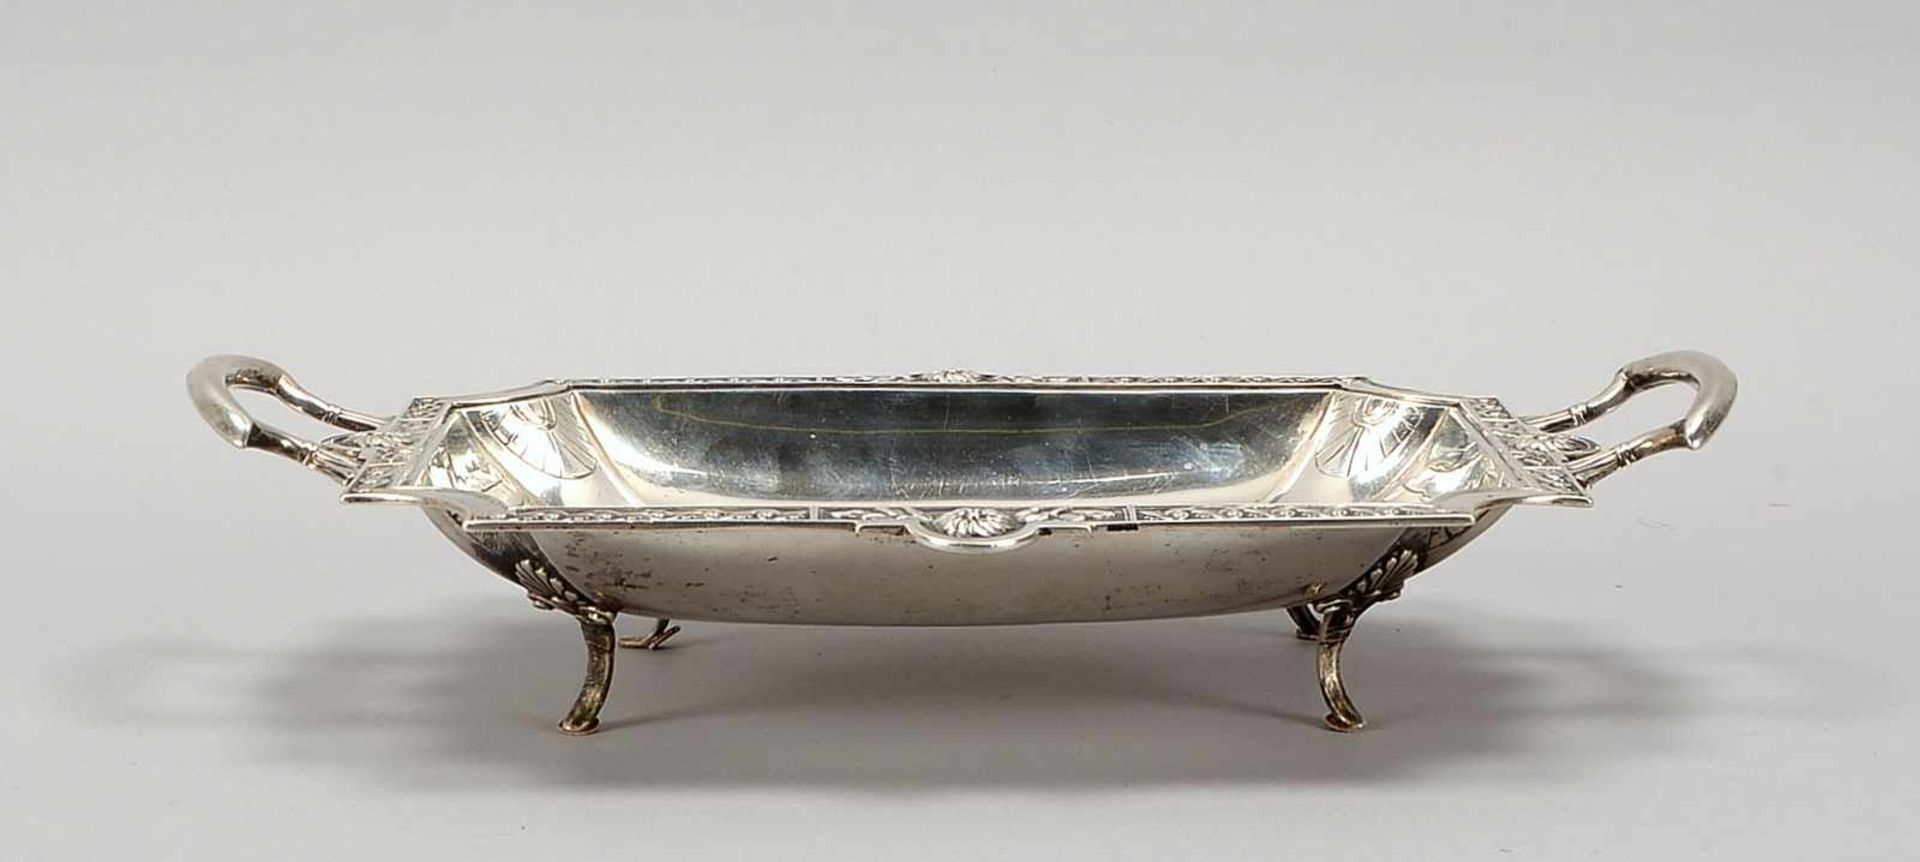 Tischschale, um 1900, 800 Silber, 2x seitliche Handhaben, Schale mit reich verziertem Rahmen, auf 4x